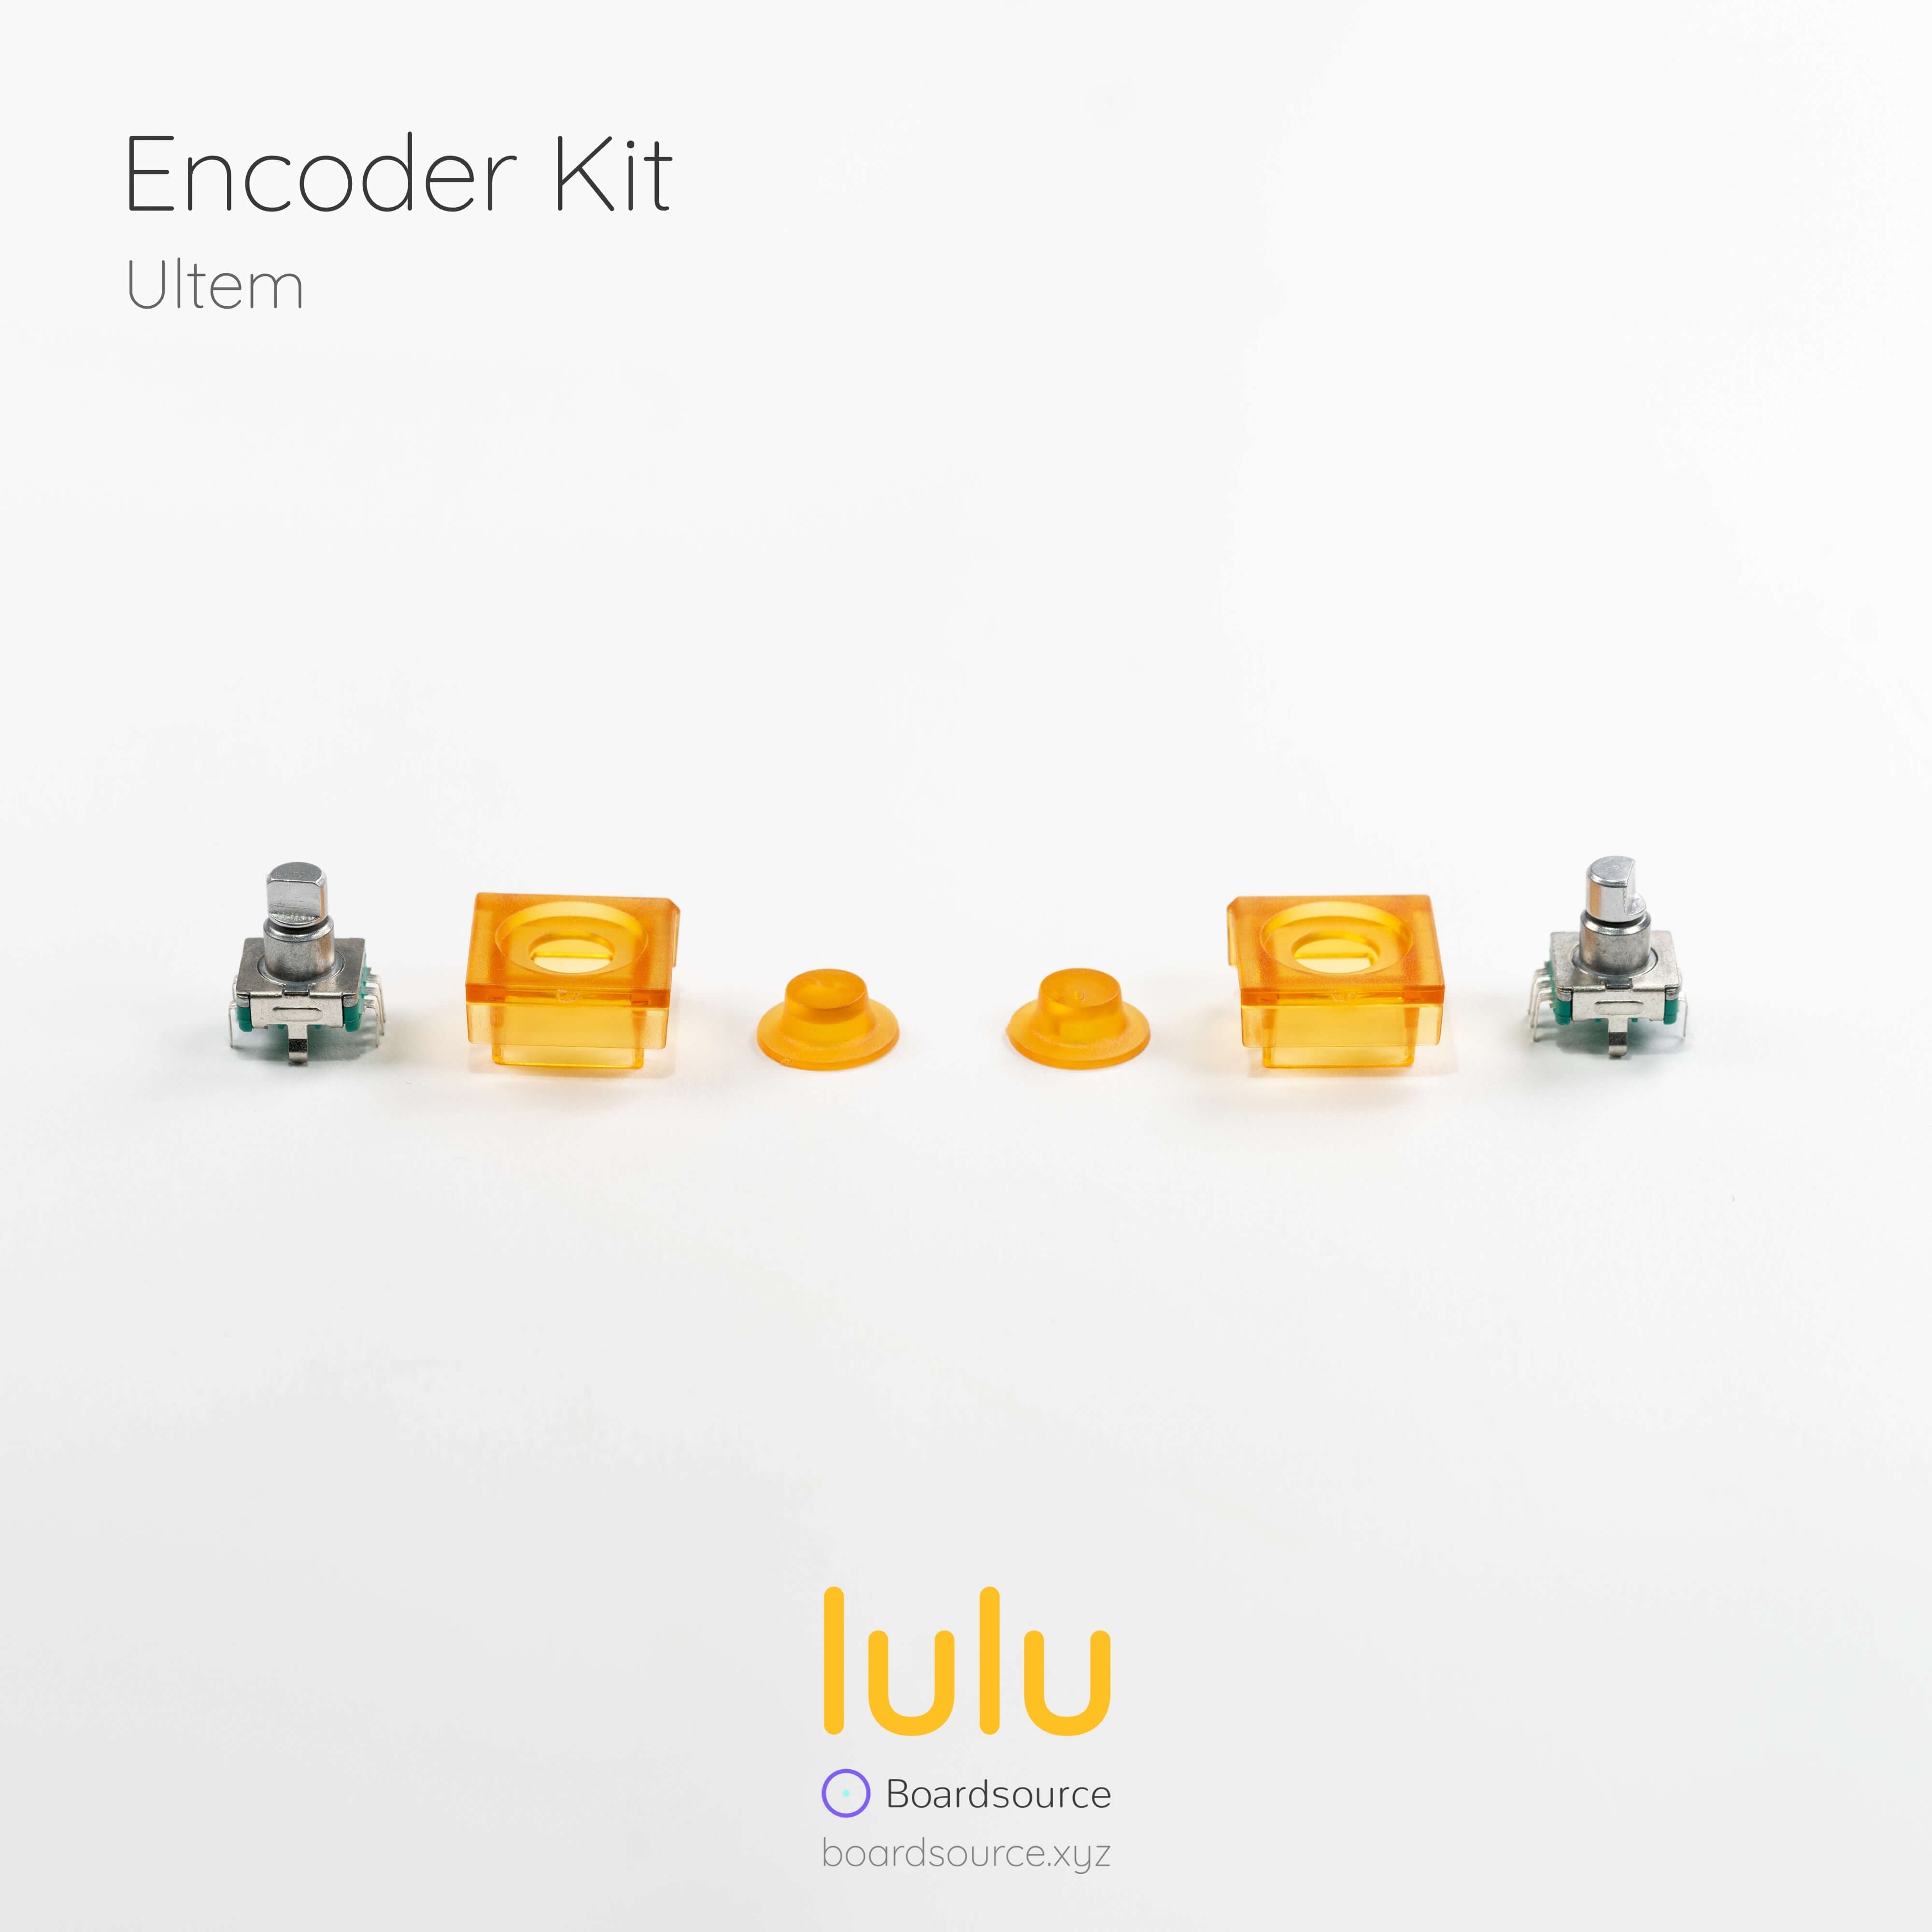 Lulu Split Keyboard - Addons & Accessories